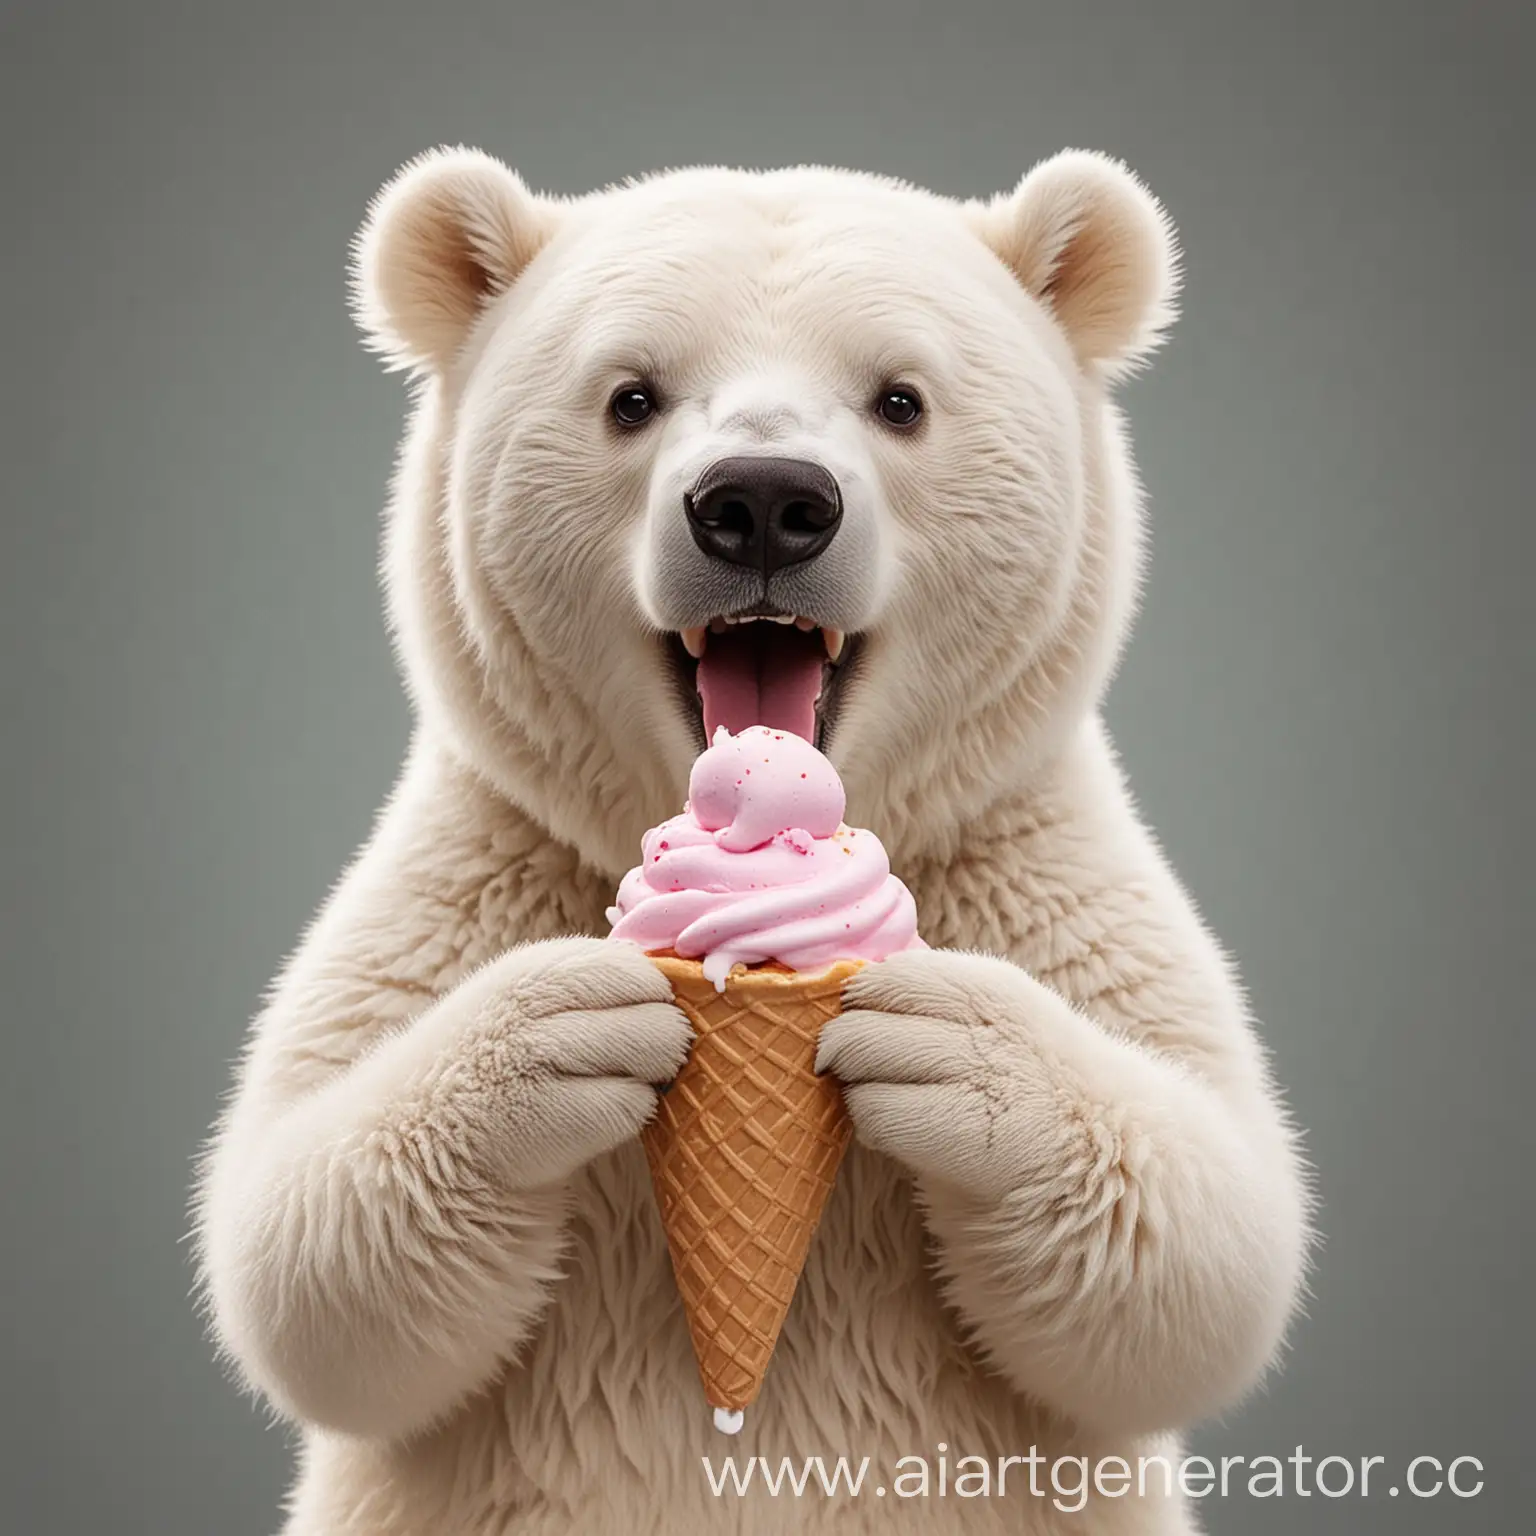 Белый медведь ест мороженное в стаканчике и улыбается 
